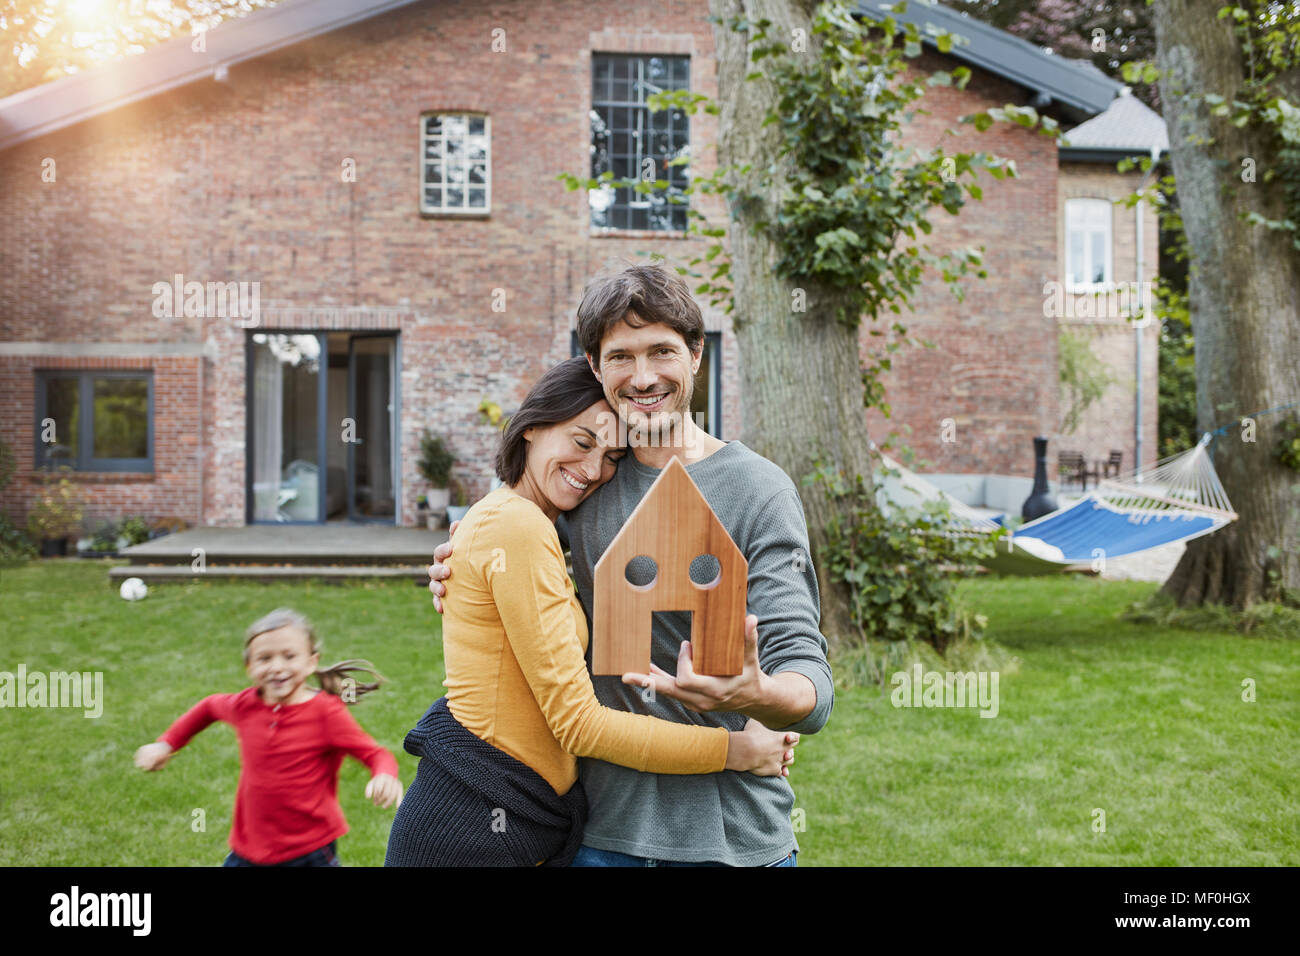 Portrait of smiling couple avec sa fille dans le jardin de leur accueil holding house model Banque D'Images